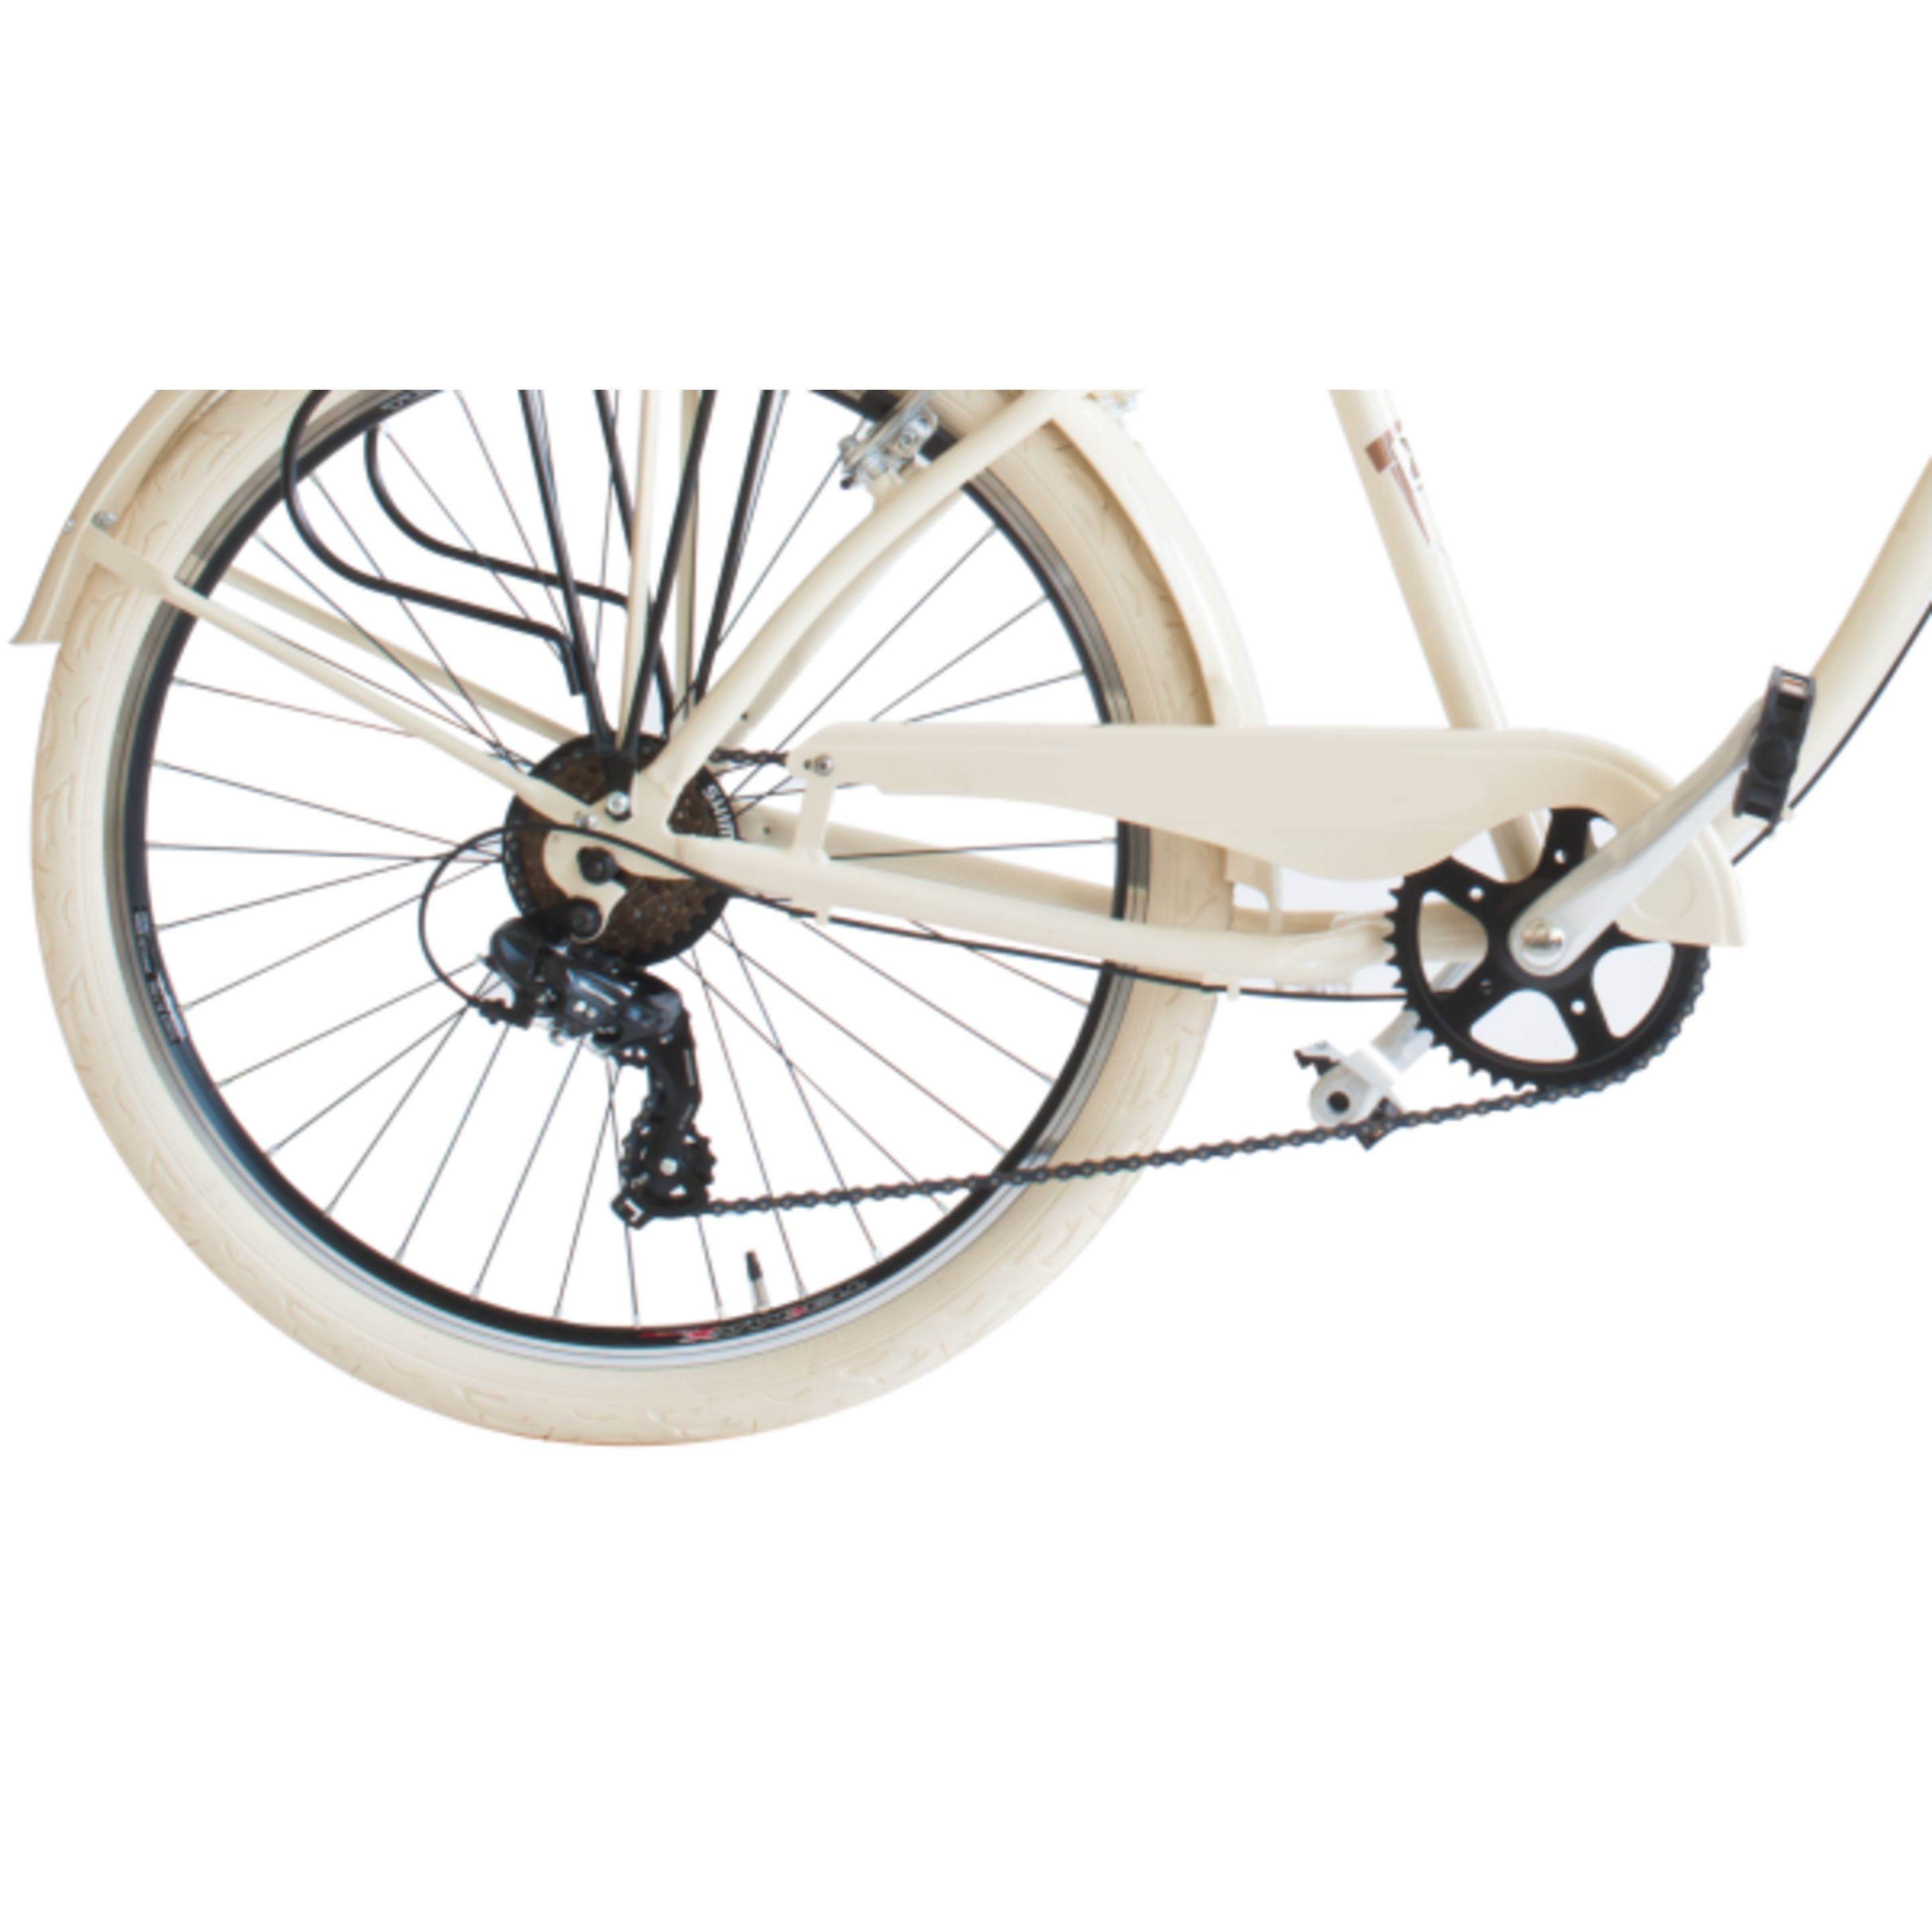 Bicicleta De Ciudad  Airbici 790m Cruiser - Beige - Vintage, paseo, ciudad, cruiser  MKP